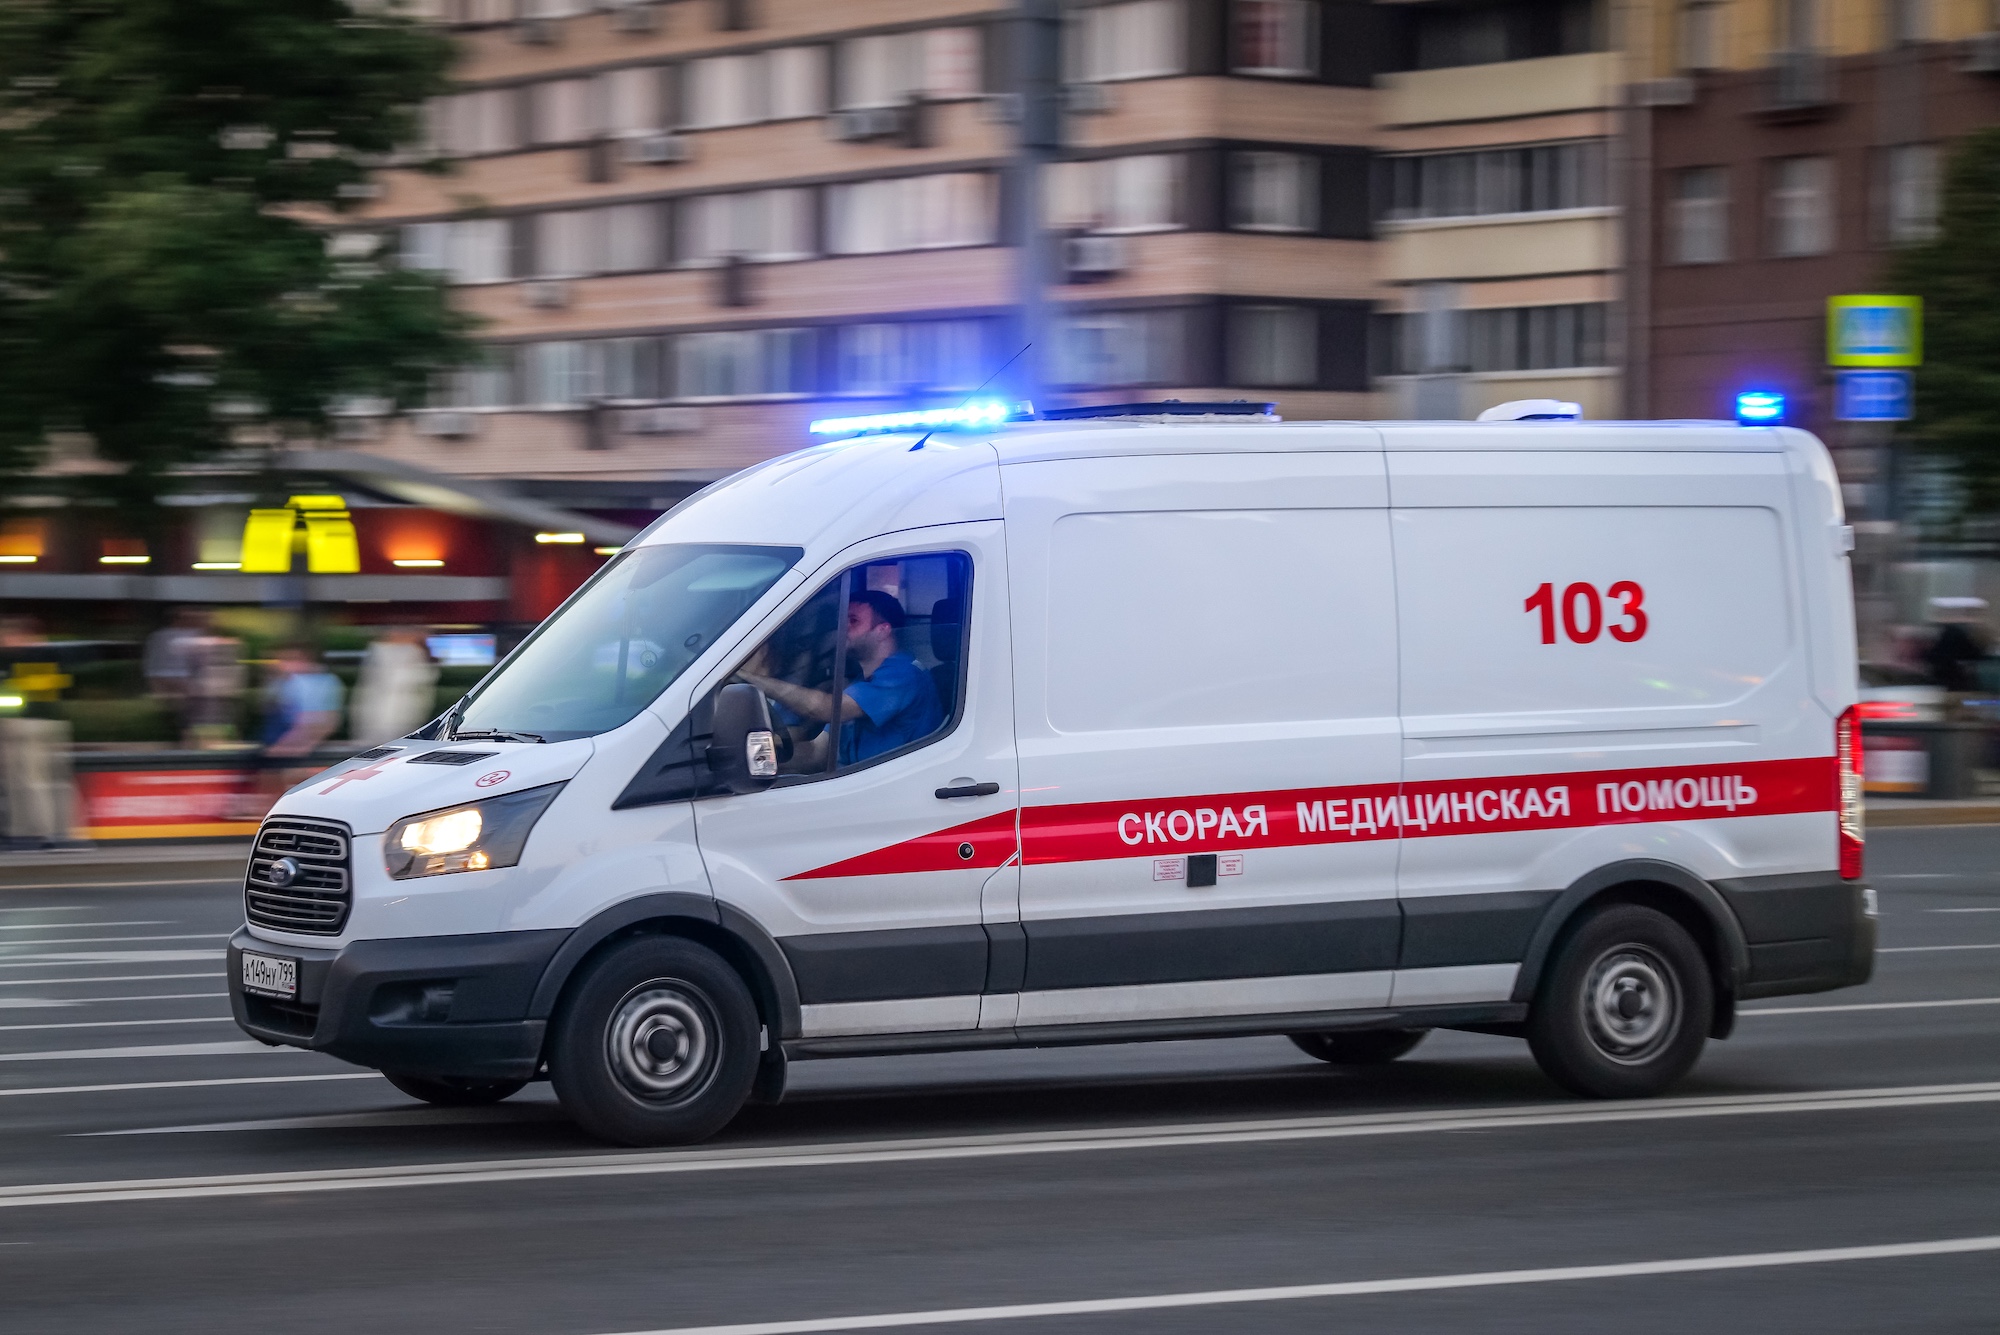 Скорая по высшему стандарту: в Москве разработан новый алгоритм экстренной помощи